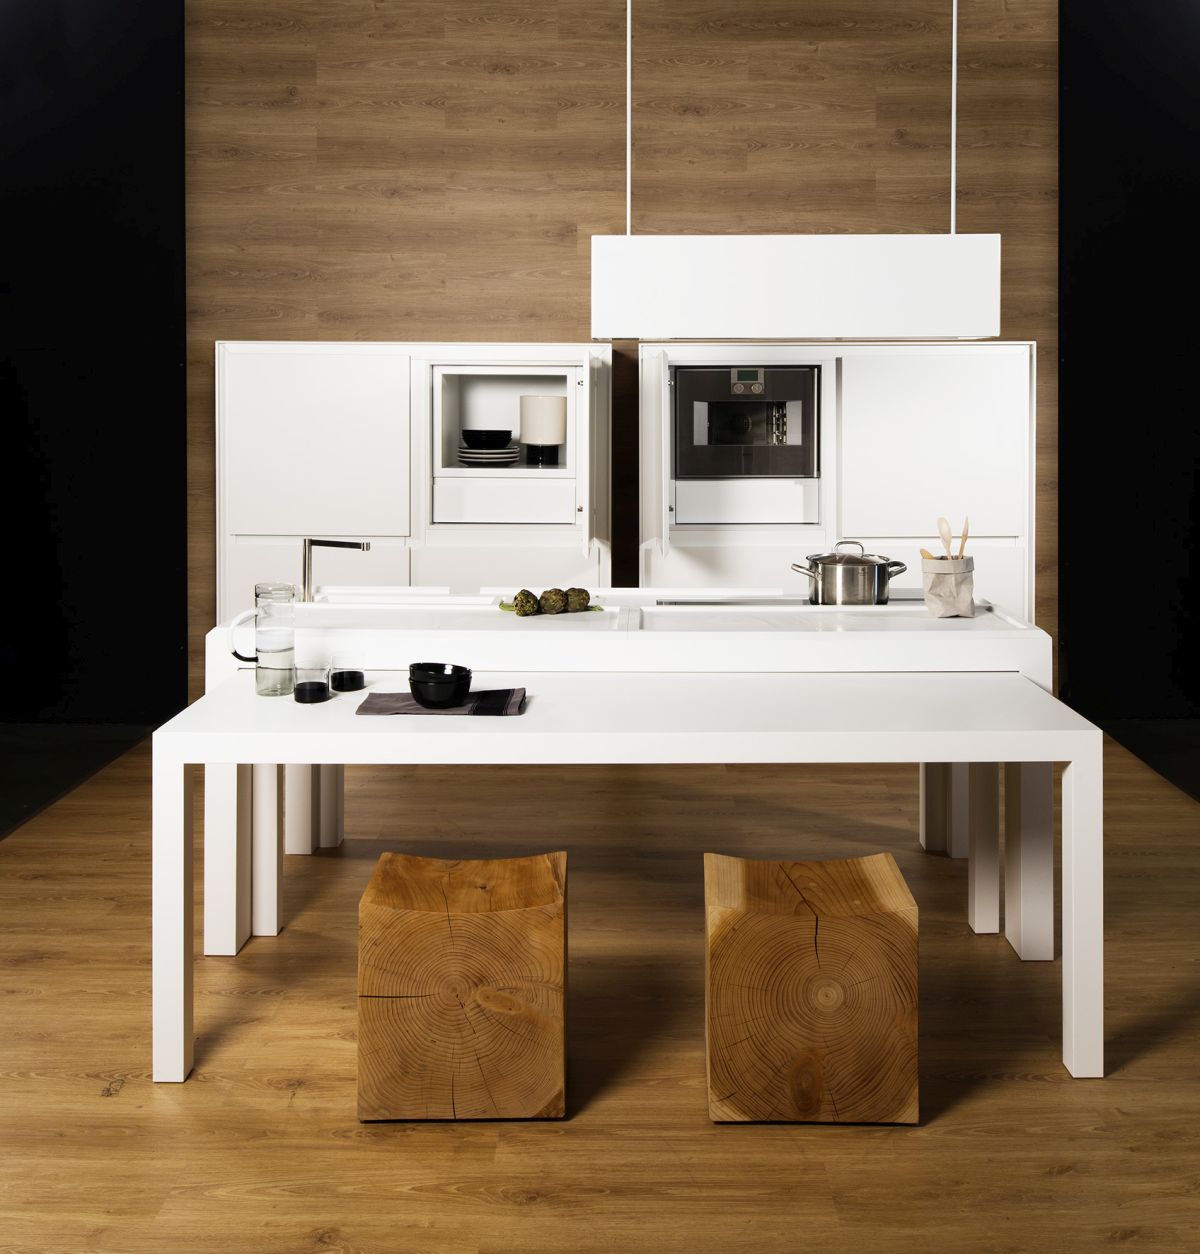 TM Italia – Off Kitchen, la cucina trasformabile